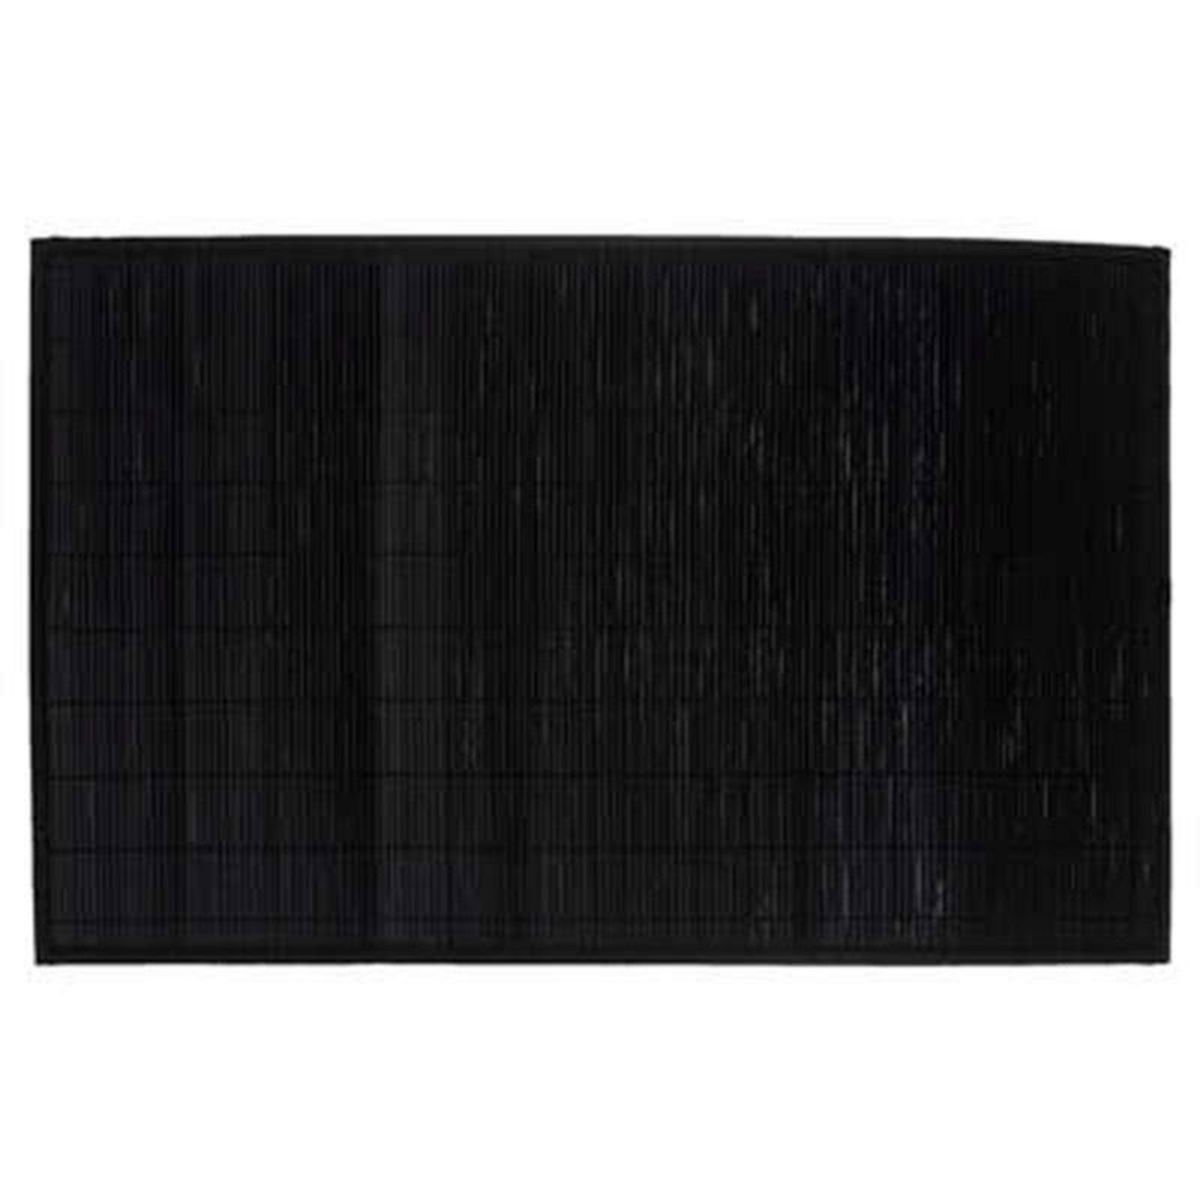  Tapis en Bambou  Latte  120x170cm Noir